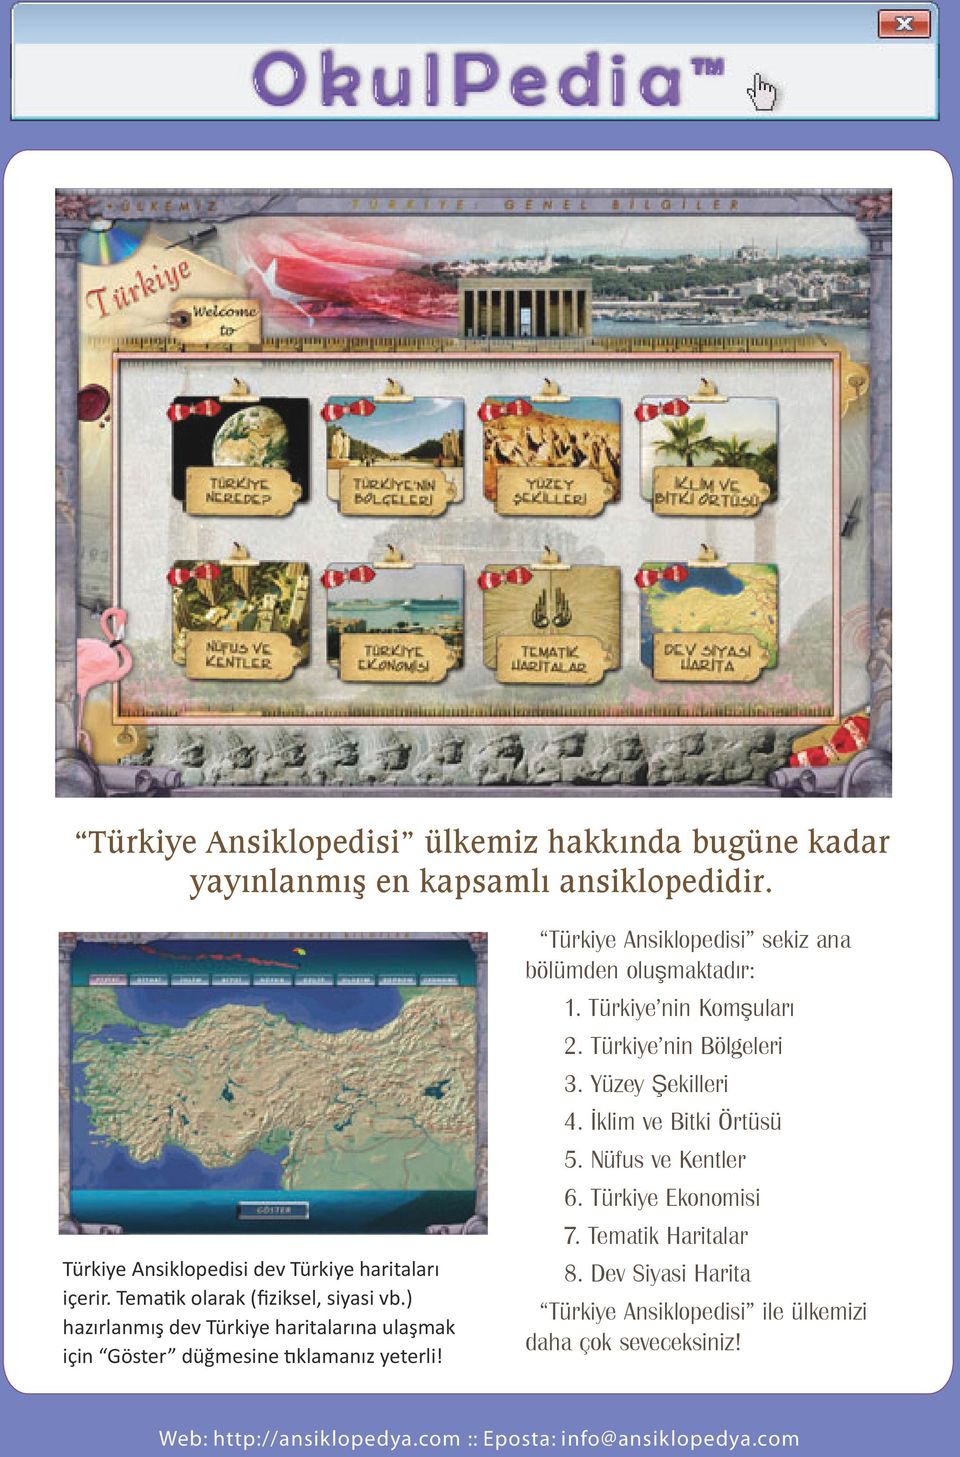 ) hazırlanmış dev Türkiye haritalarına ulaşmak için Göster düğmesine tıklamanız yeterli!